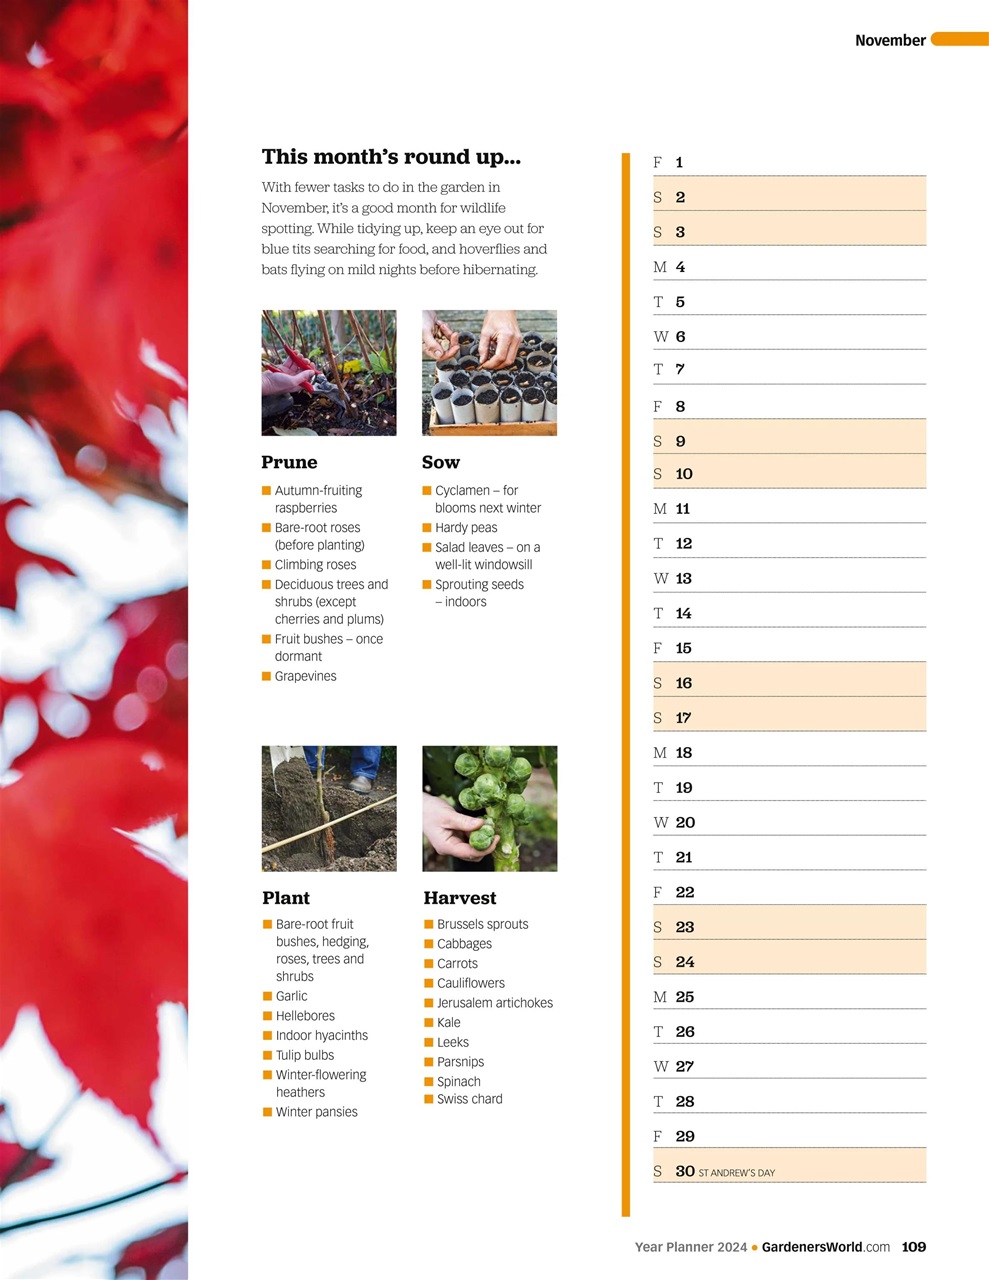 BBC Gardeners’ World Magazine Year Planner 2024 Special Issue